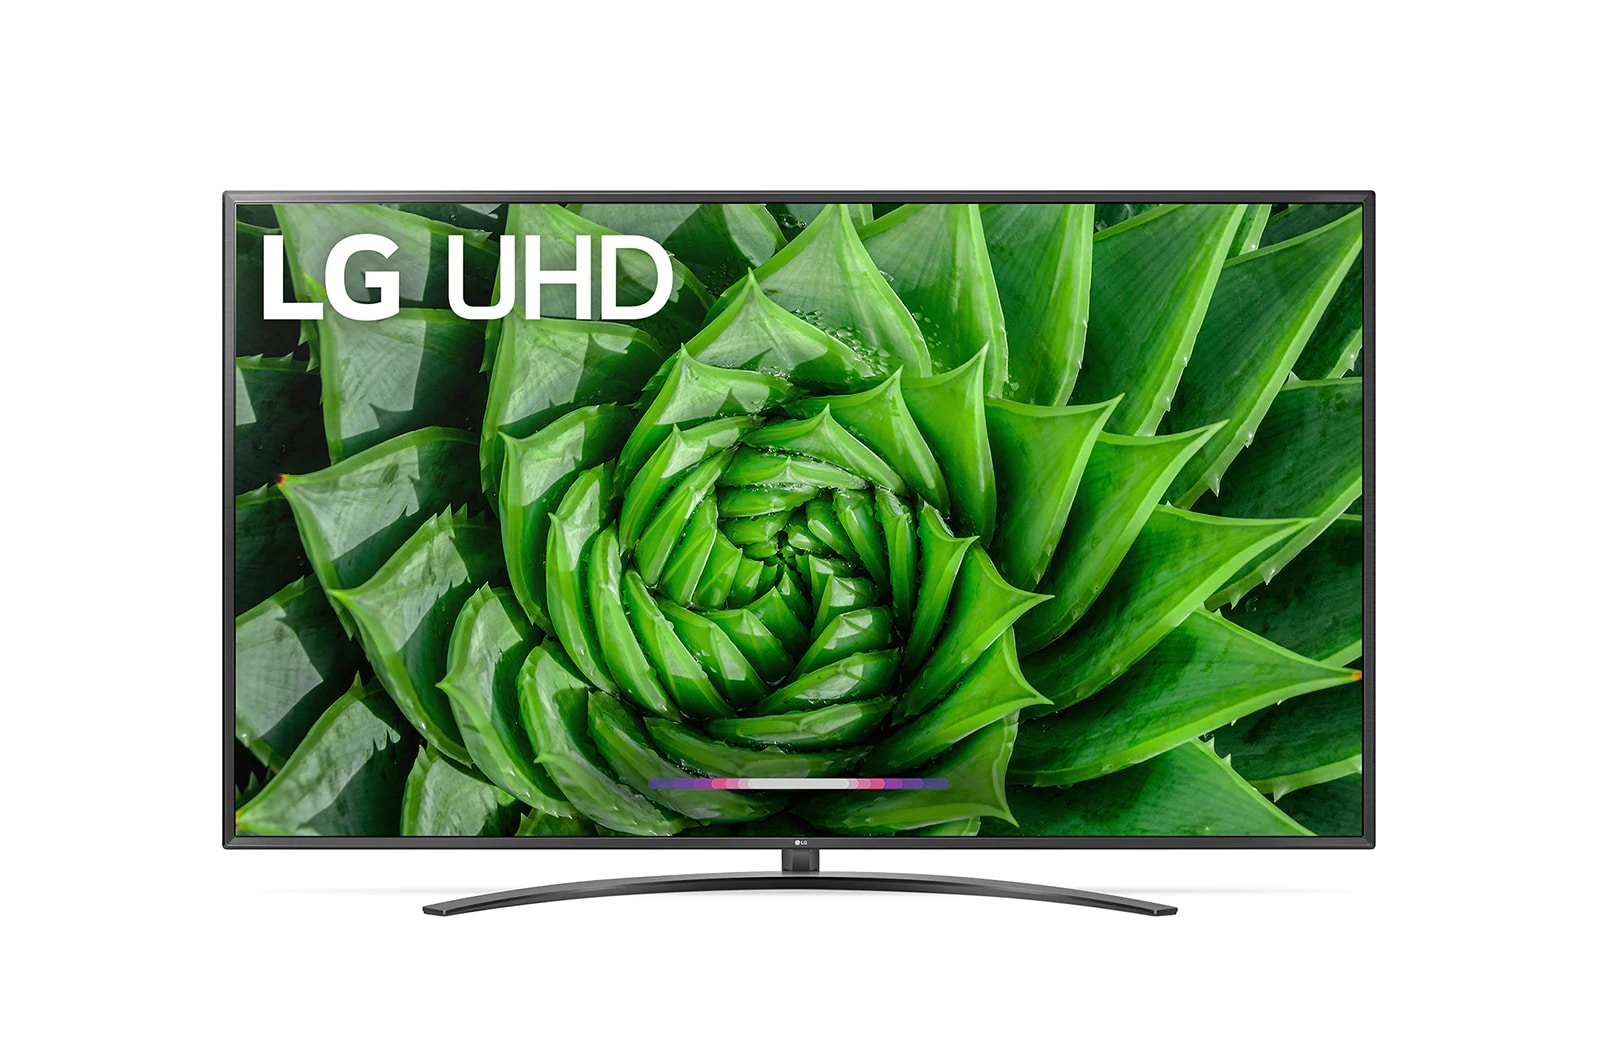 OLED TVs - Buy LG OLED Smart 4K TVS + More - JB Hi-Fi